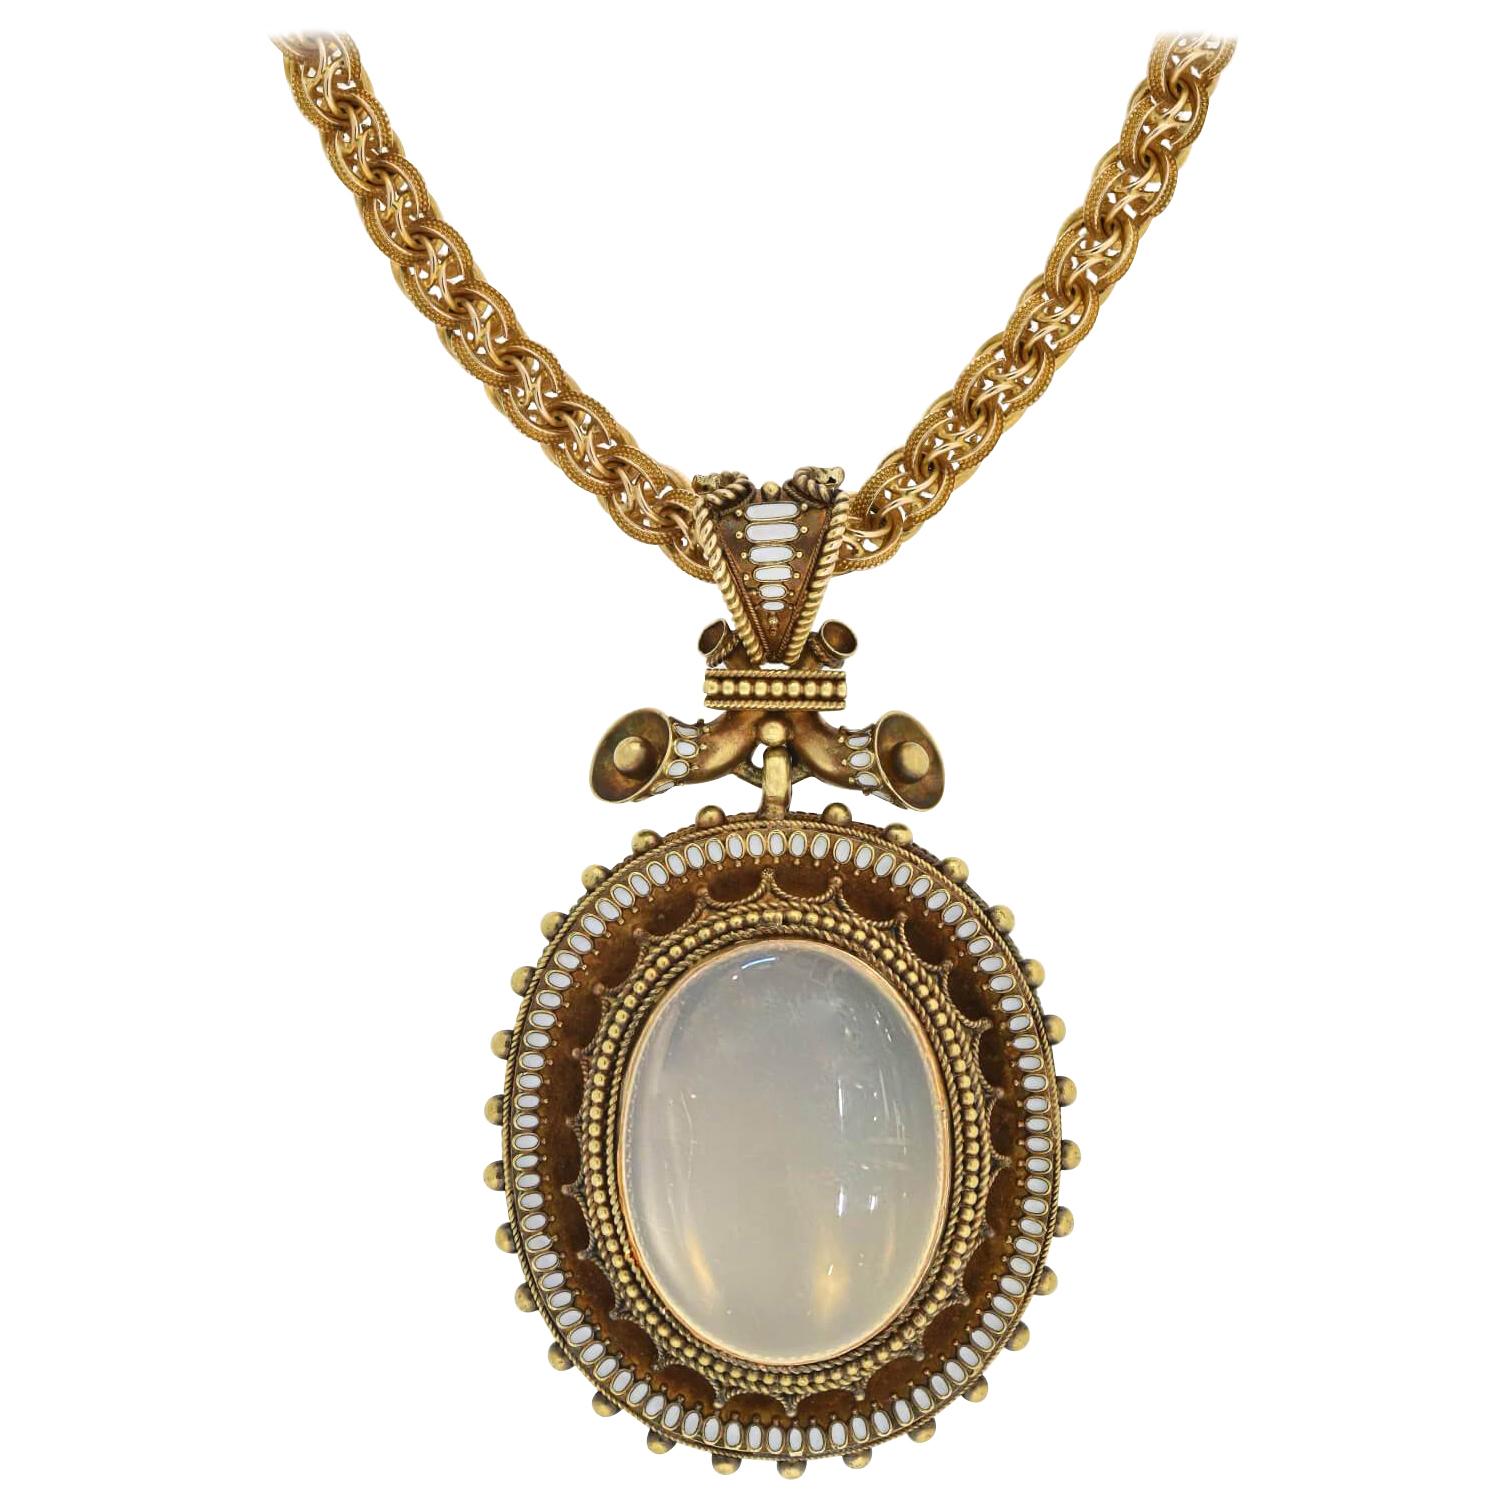 Grand collier victorien émaillé 18 carats avec pendentif en pierre de lune et émail